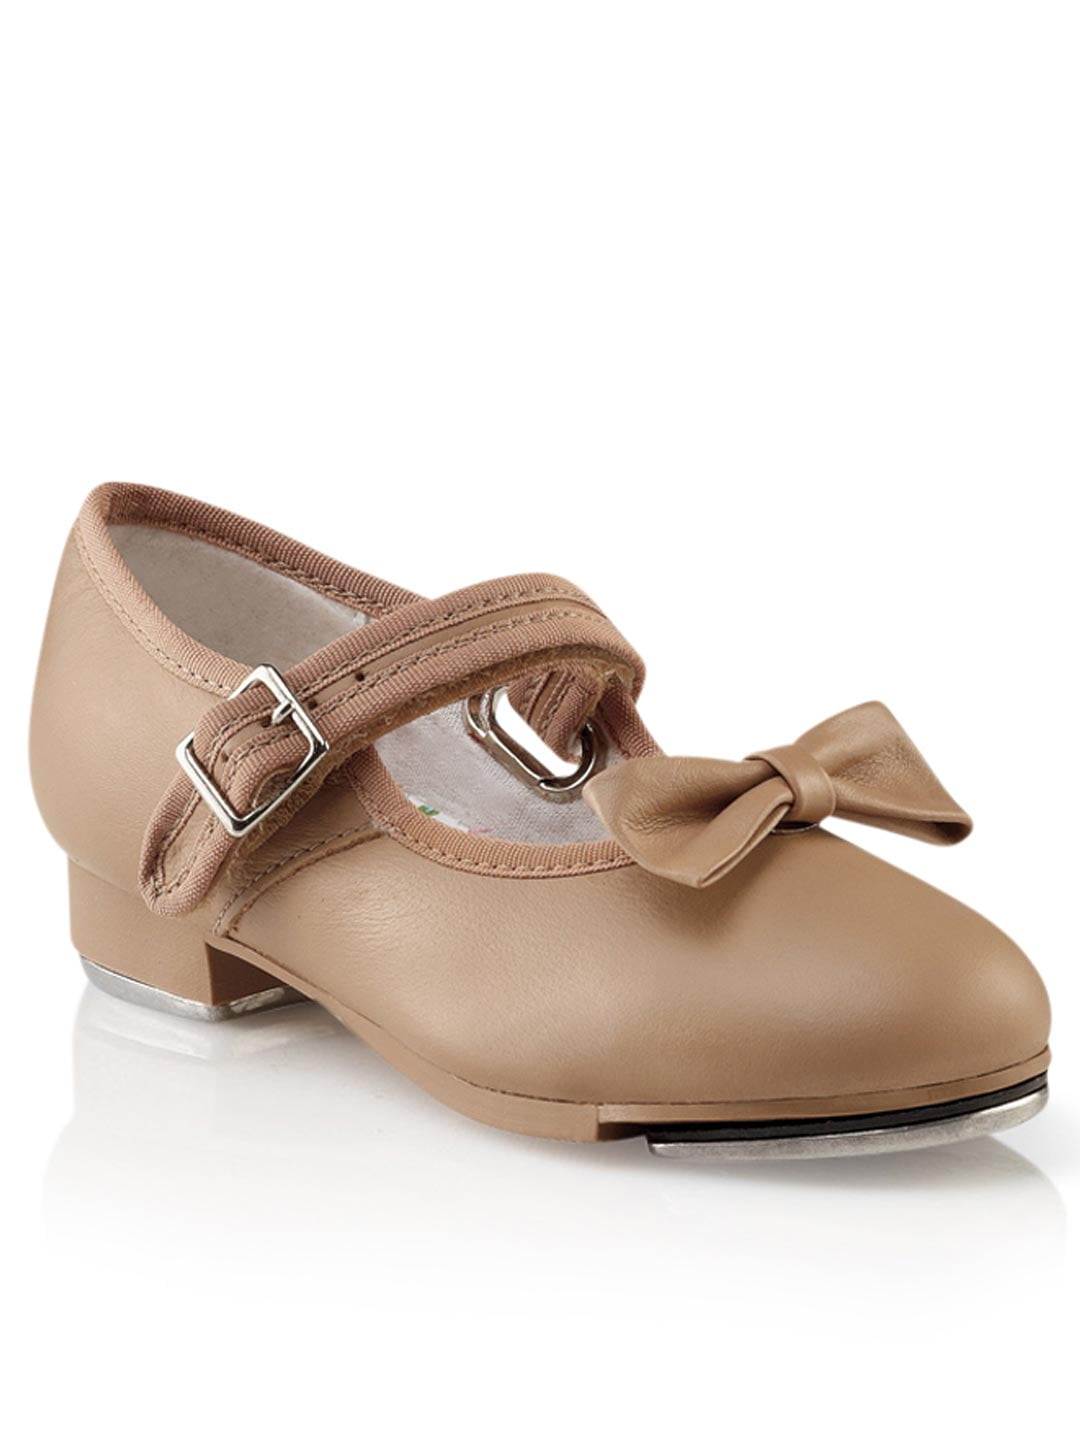 Capezio Mary Jane Tap Shoe - Child - Walmart.com